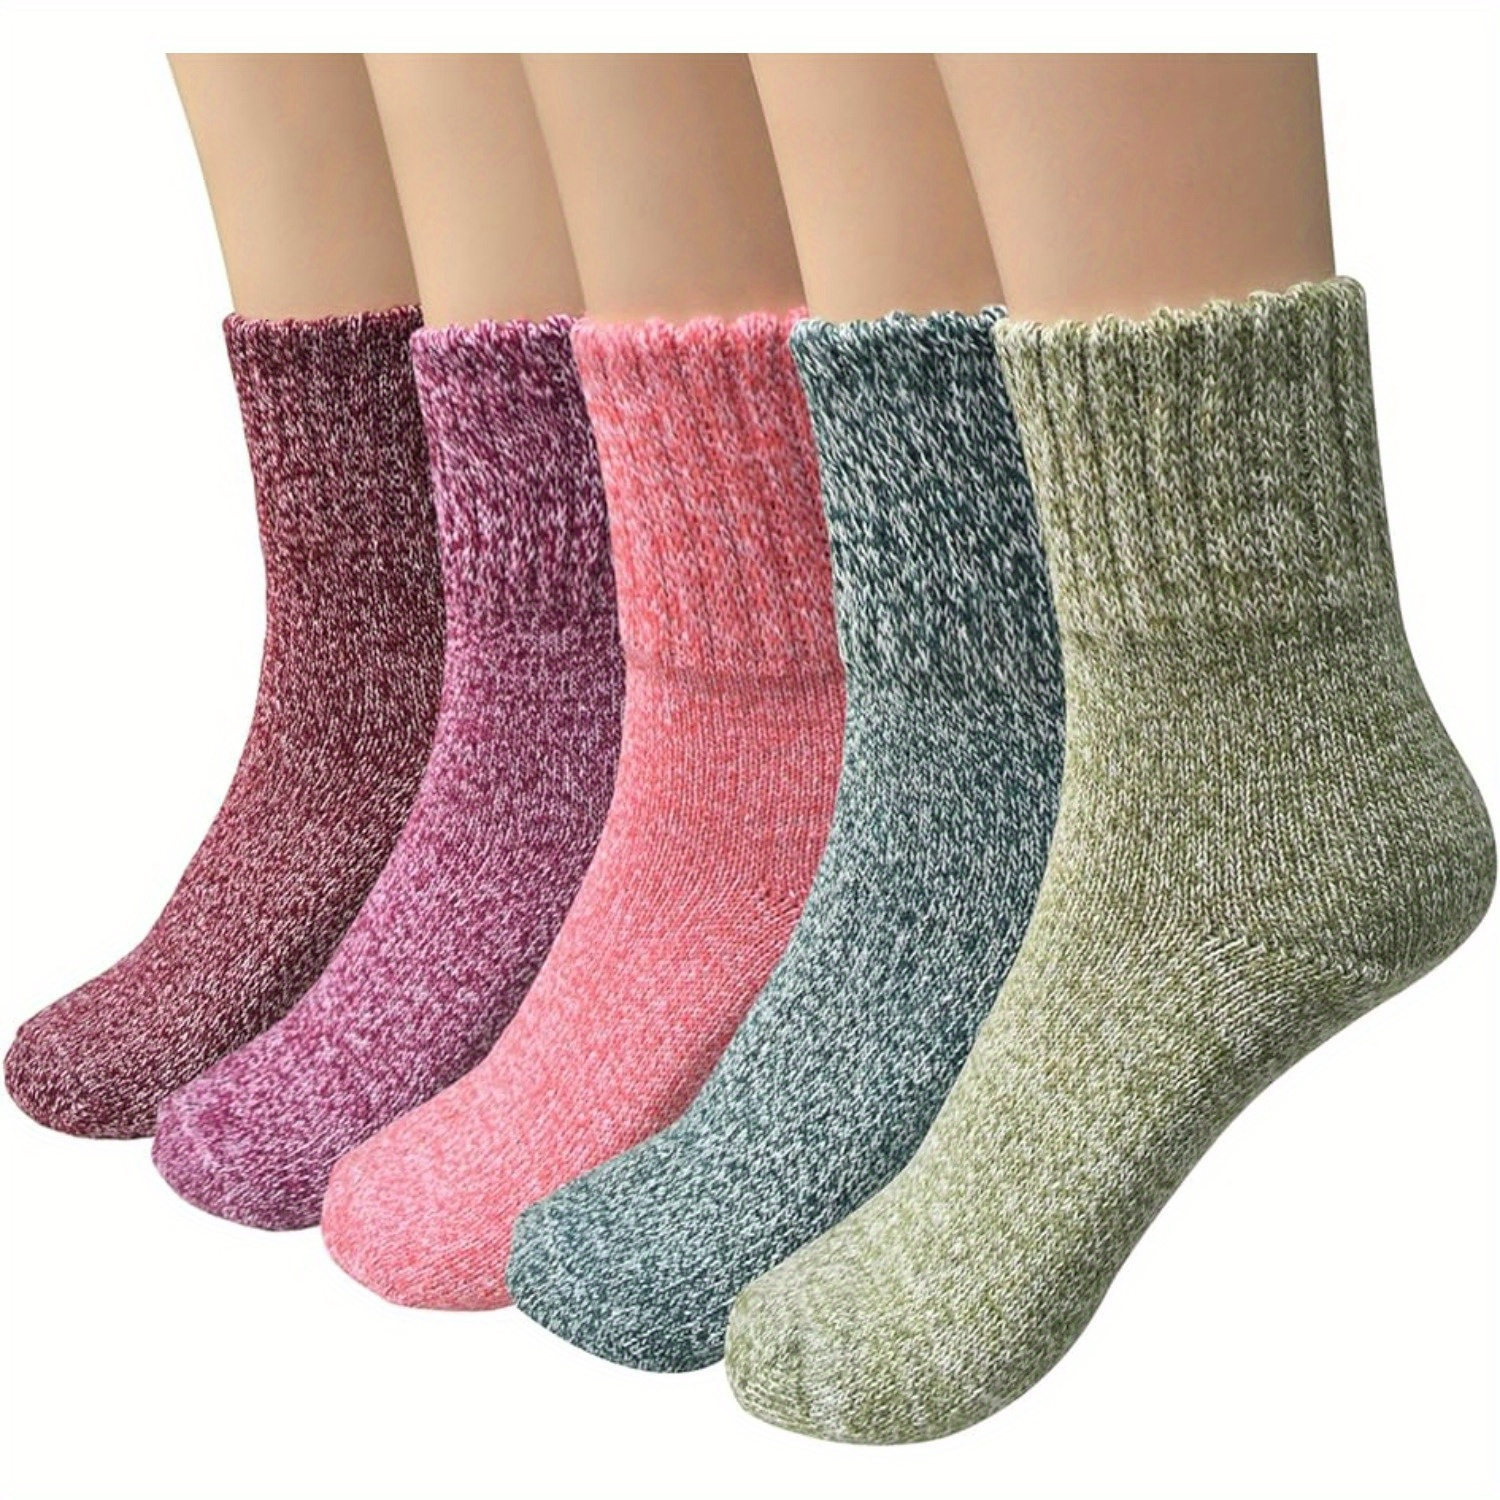 Elkuaie Calcetines Cocoon para mujer Calcetines de lana gruesa para mujer  Calcetines antideslizantes para el hogar Zapatillas talla única